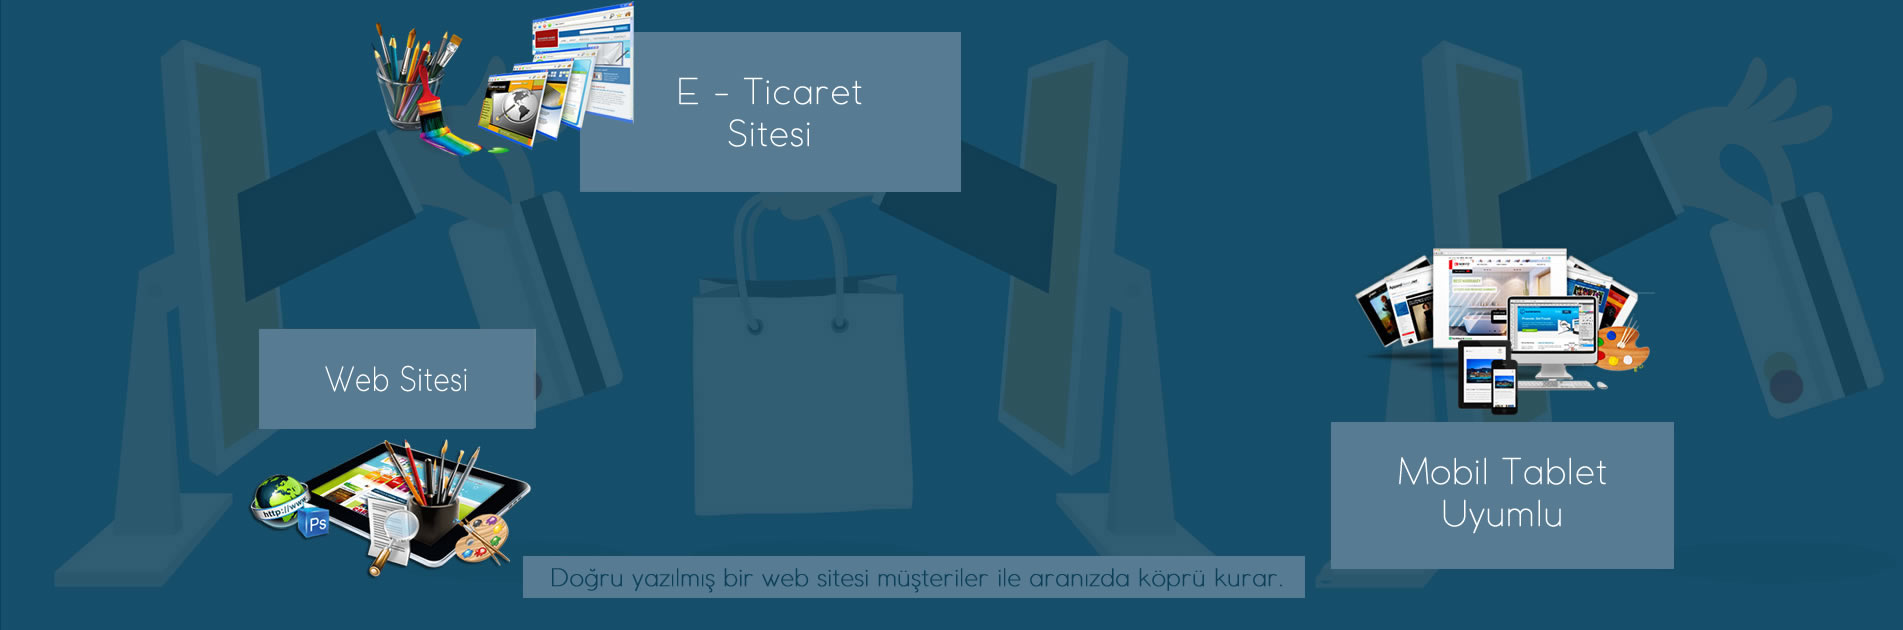 E - Ticaret Web Sayfası